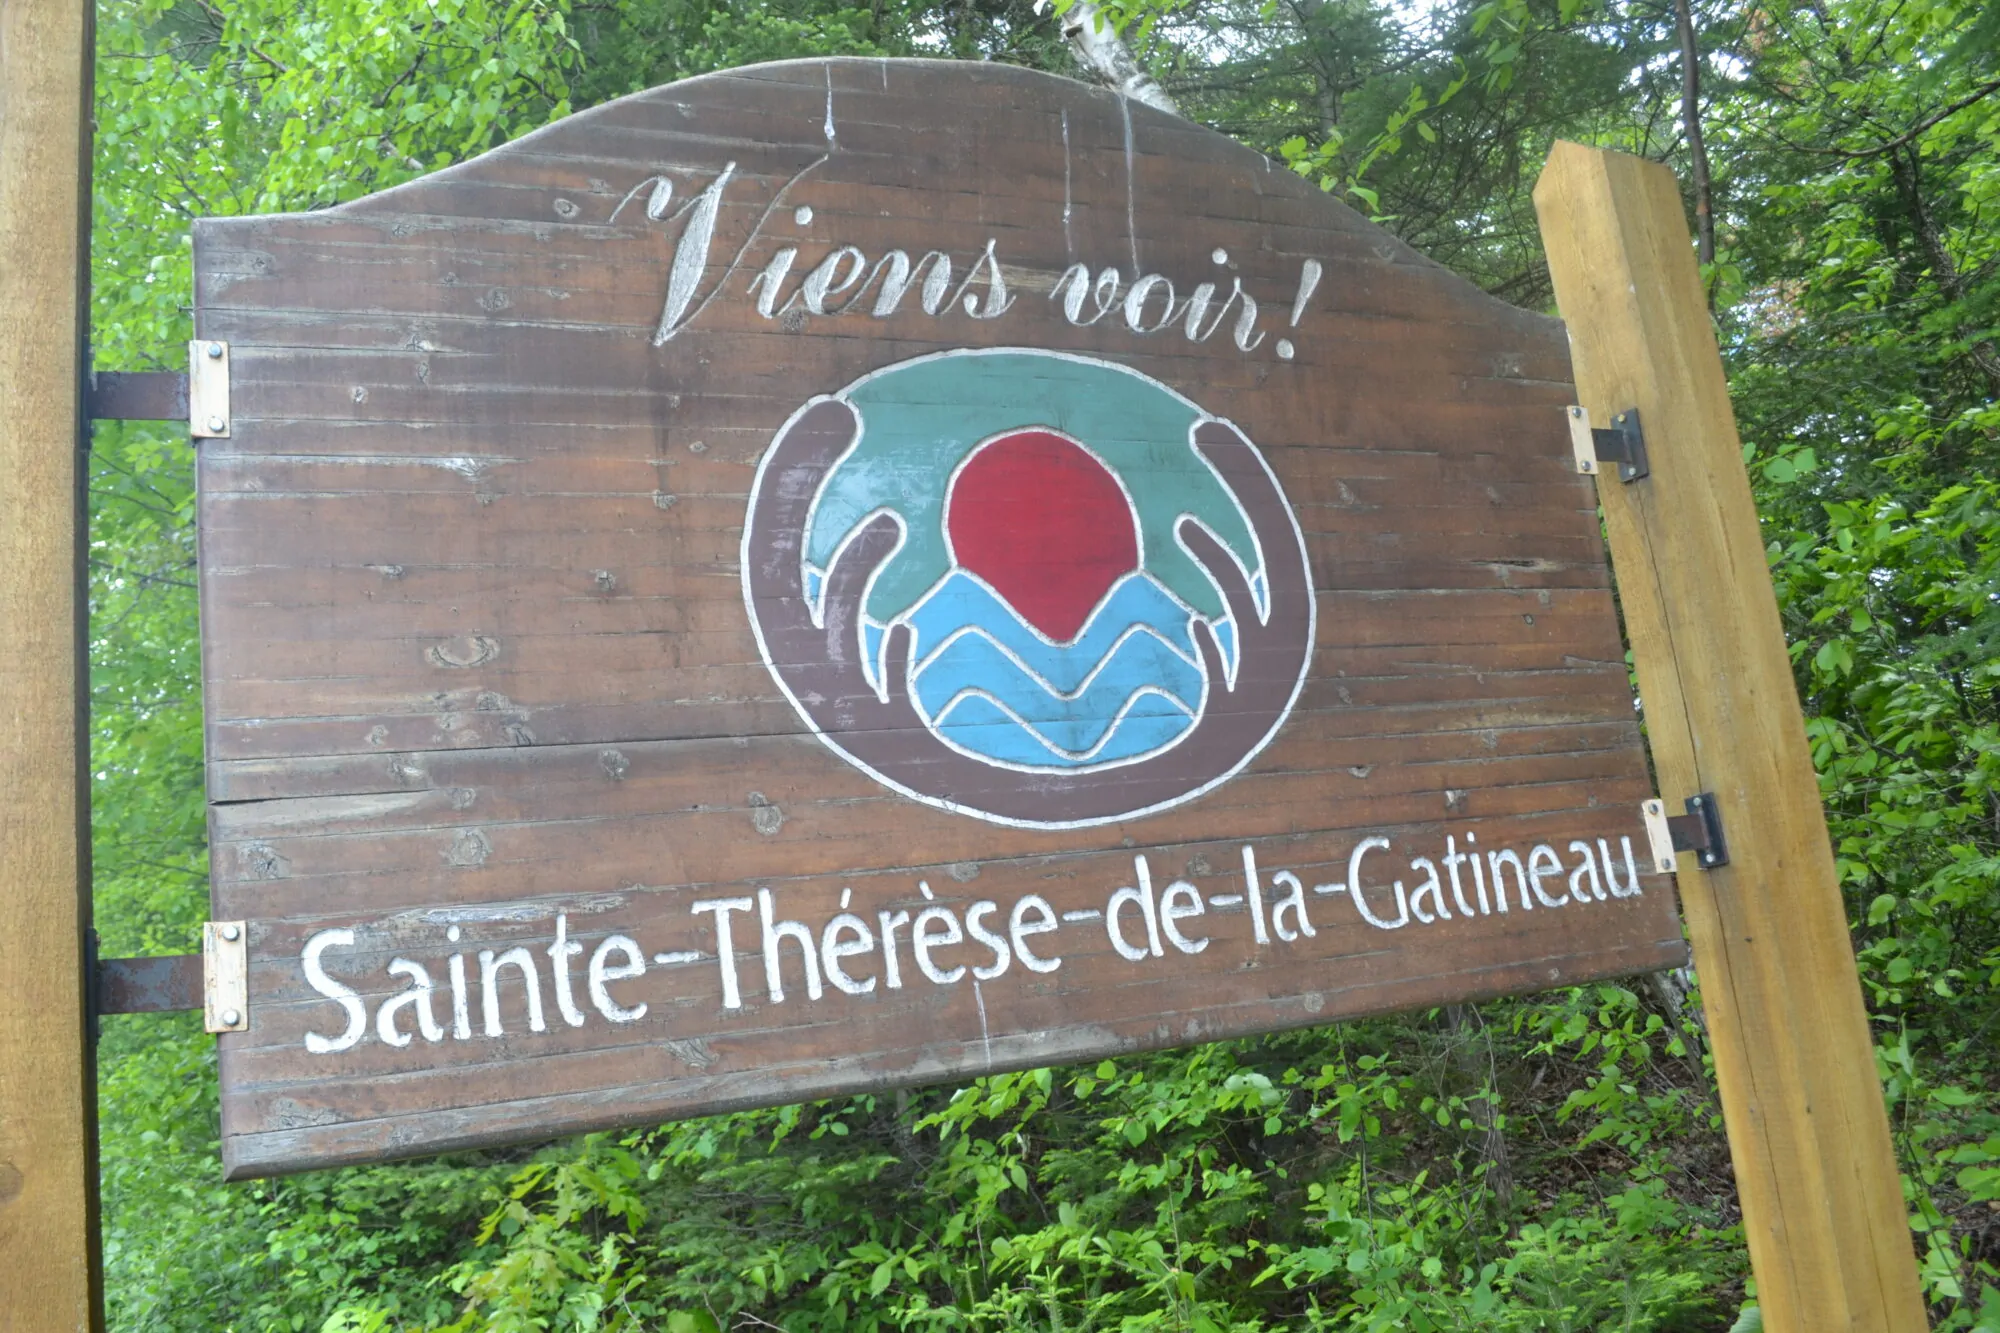 Sainte-Thérèse-de-la-Gatineau